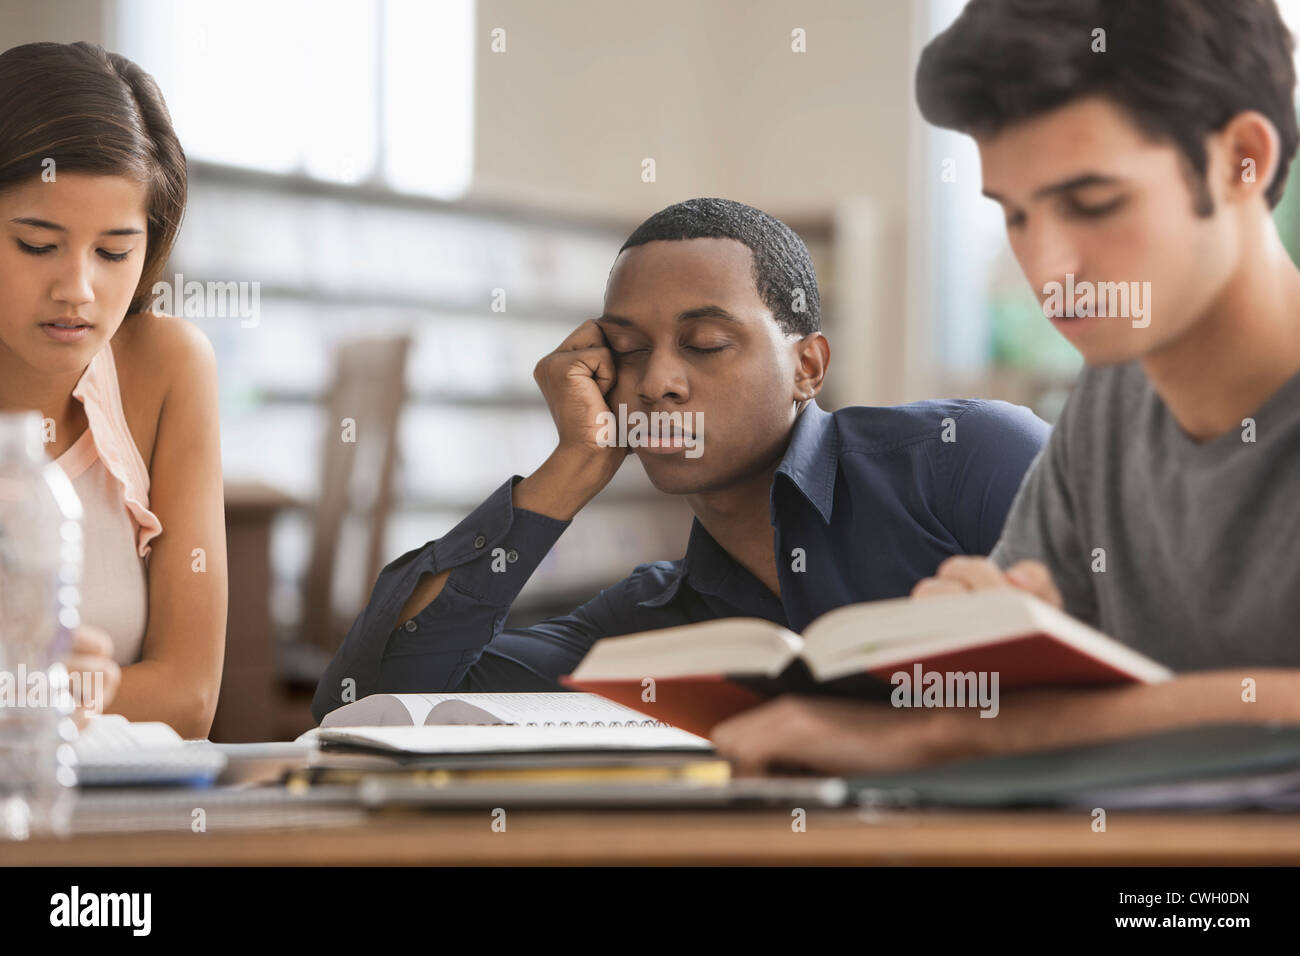 Gelangweilt Studierender mit Freunden Stockfoto